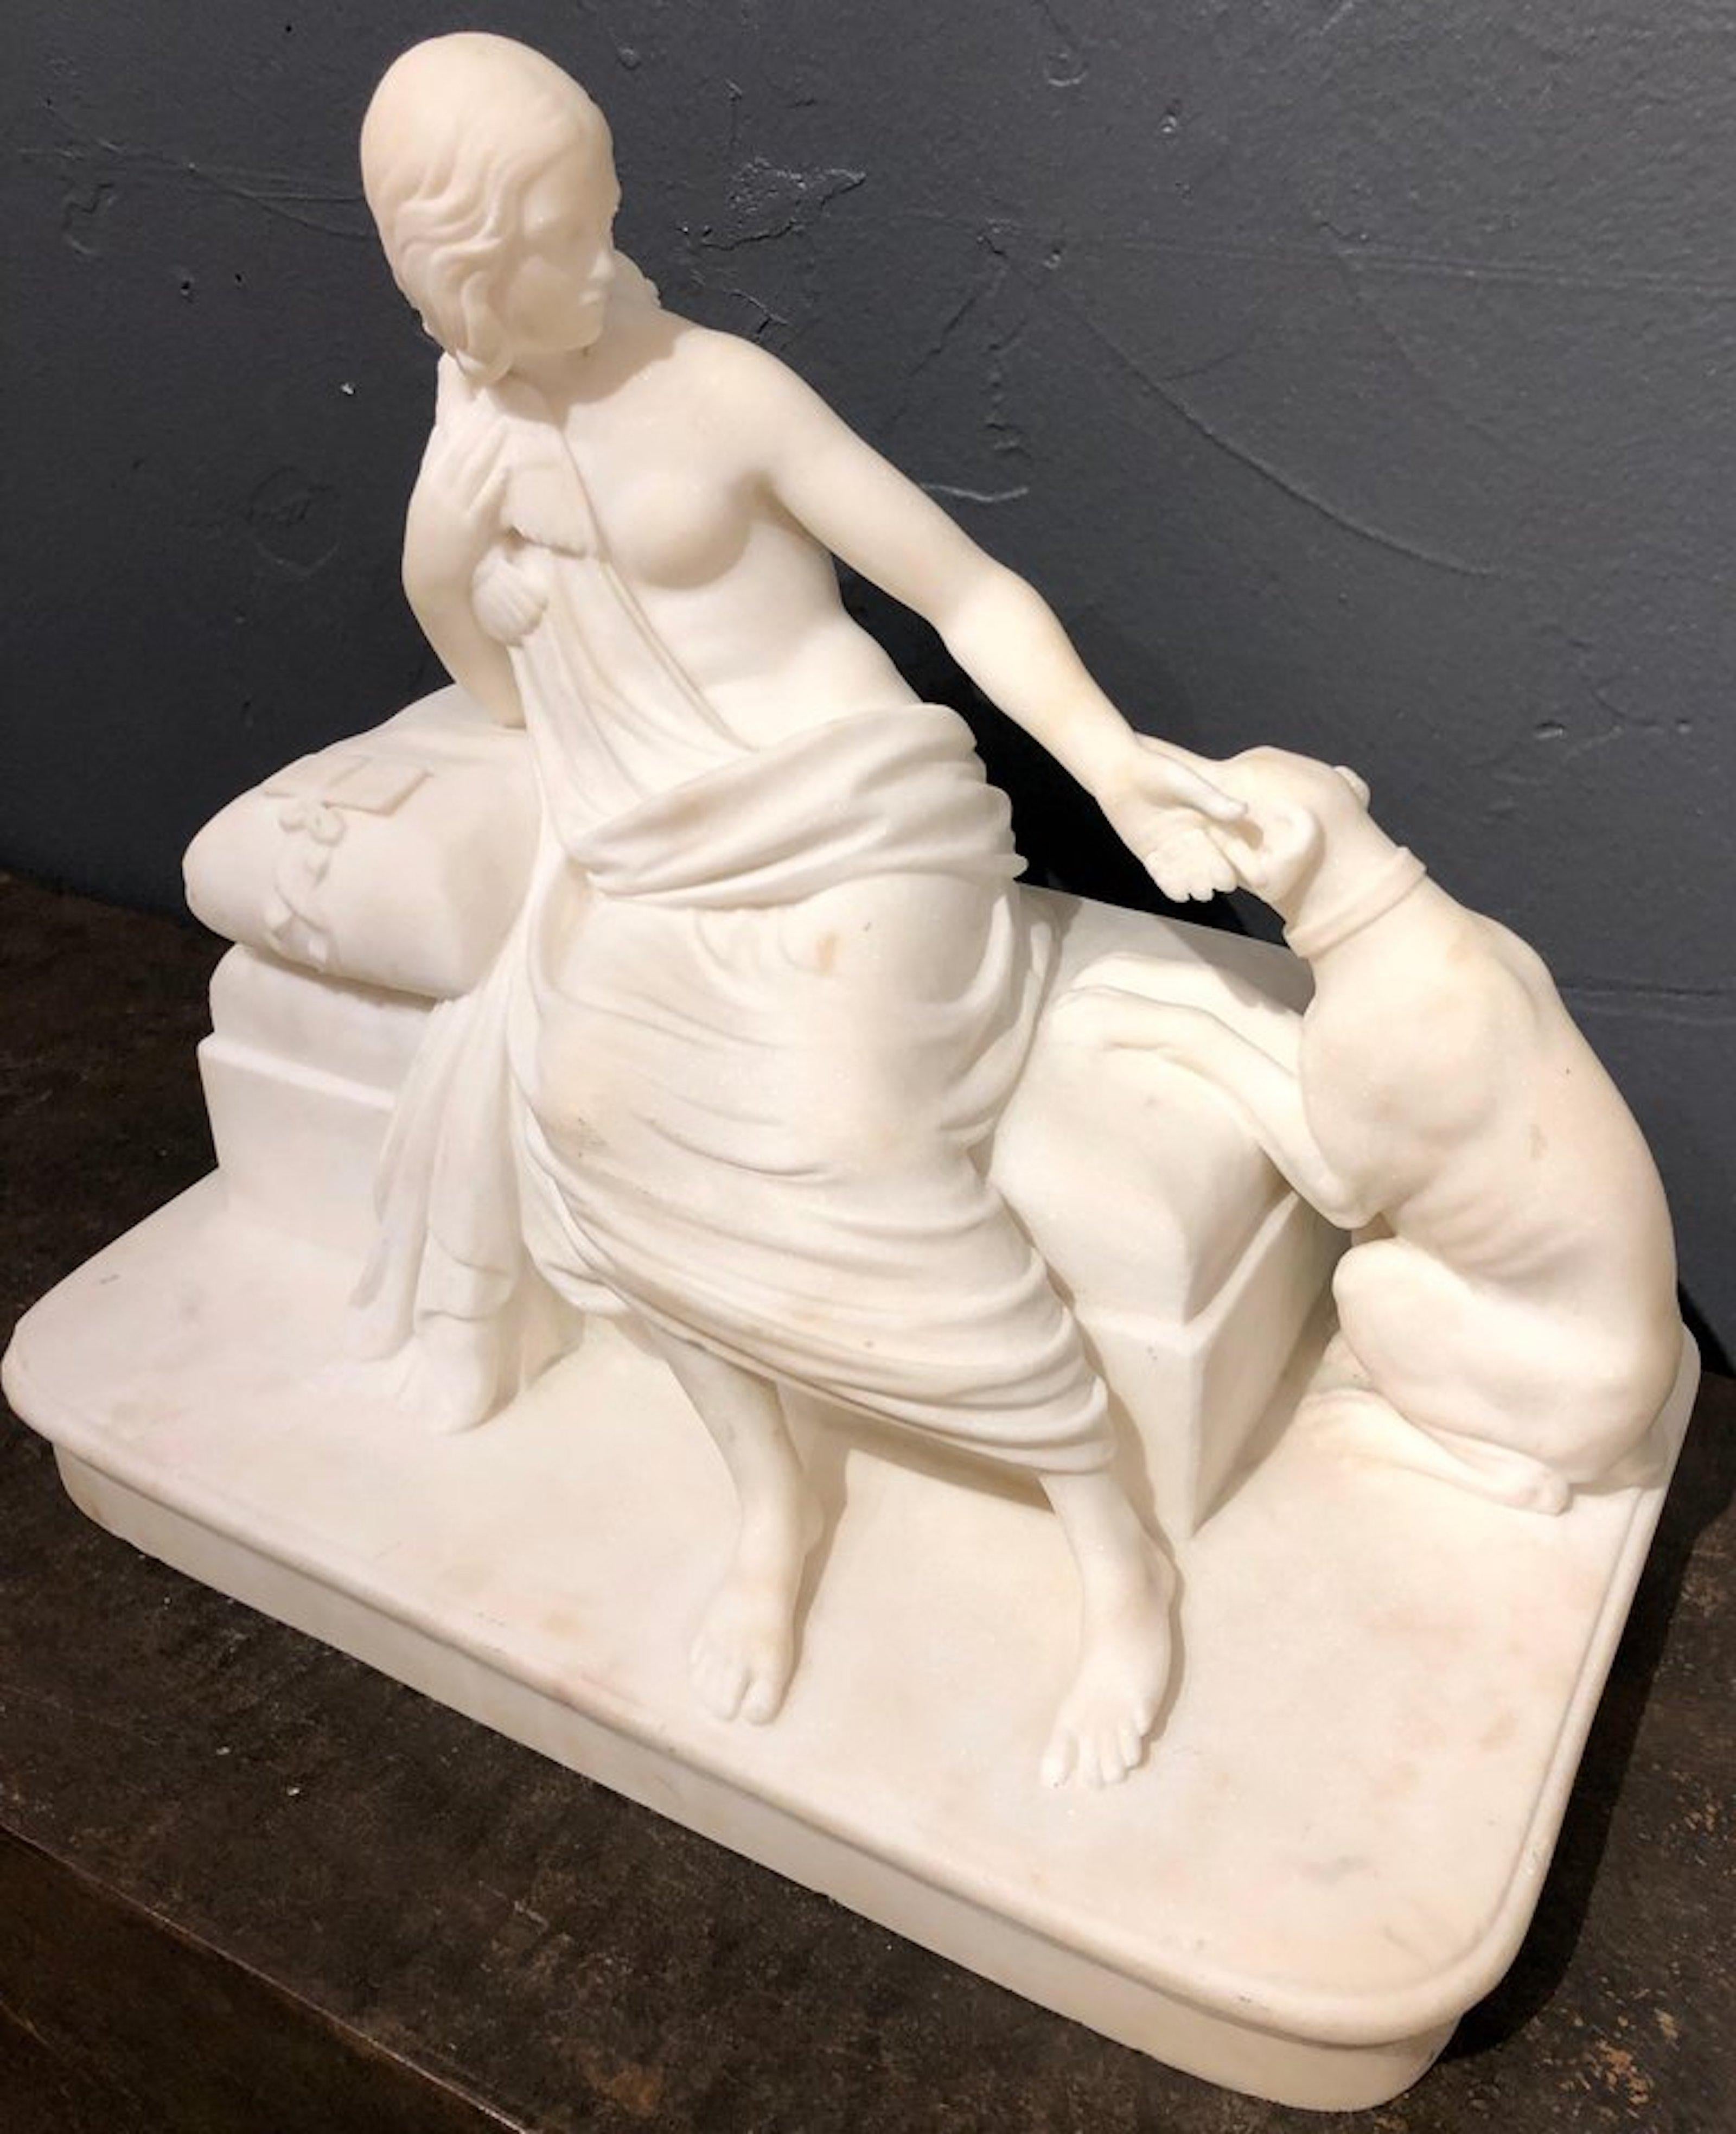 Her Faithful Companion - Sculpture by Holme Cardwell